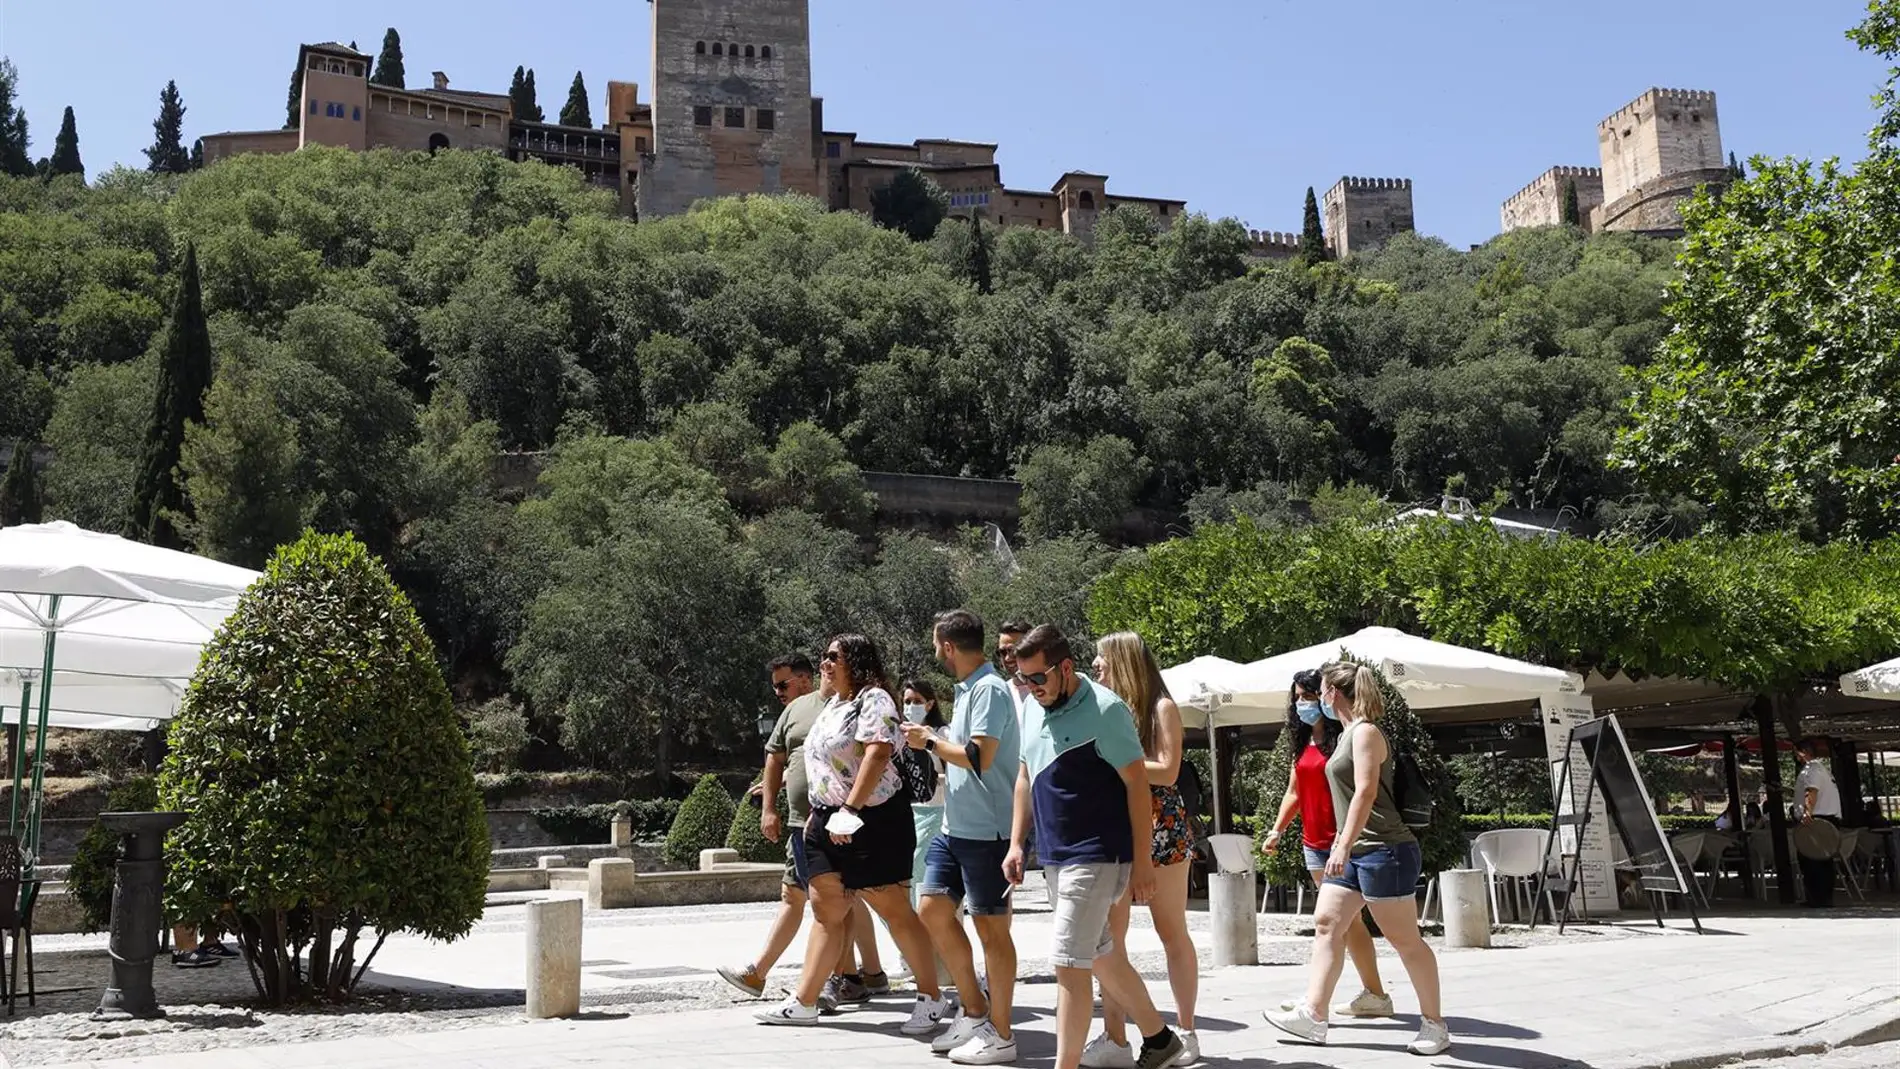 CCOO pide avanzar en la implantación de una tasa turística en Granada